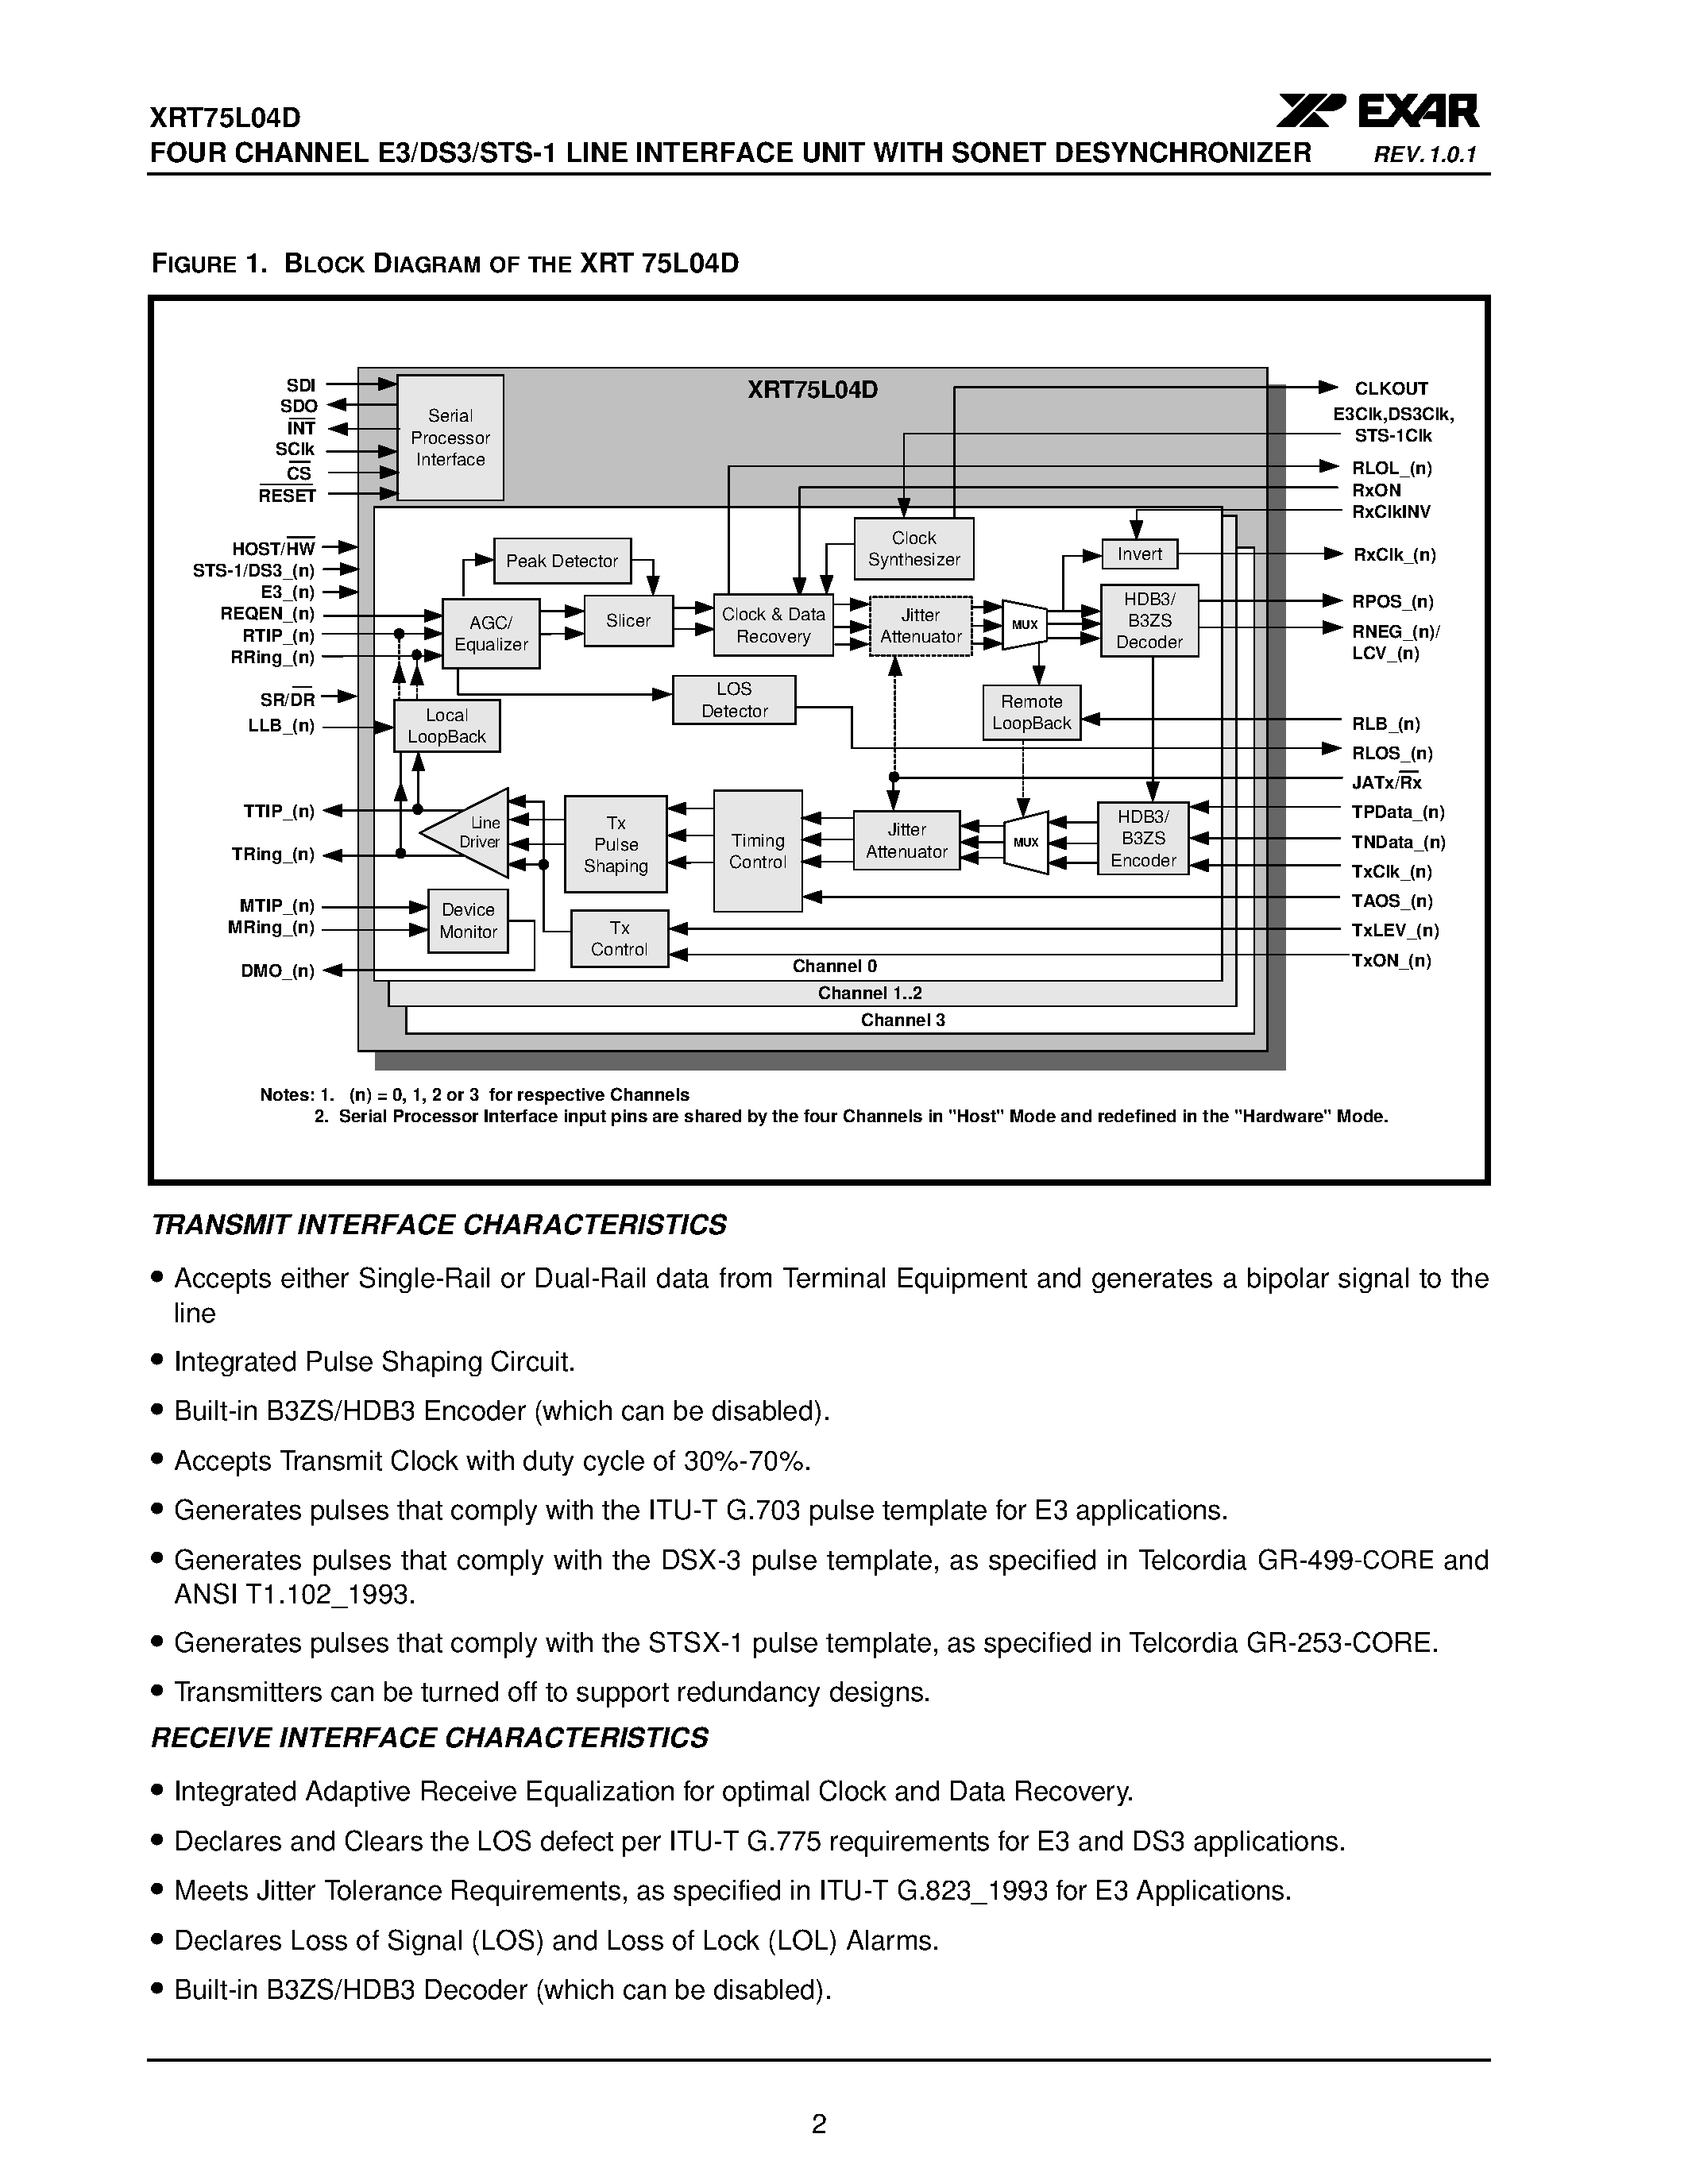 Даташит XRT75L04D - FOUR CHANNEL E3/DS3/STS-1 LINE INTERFACE UNIT страница 2